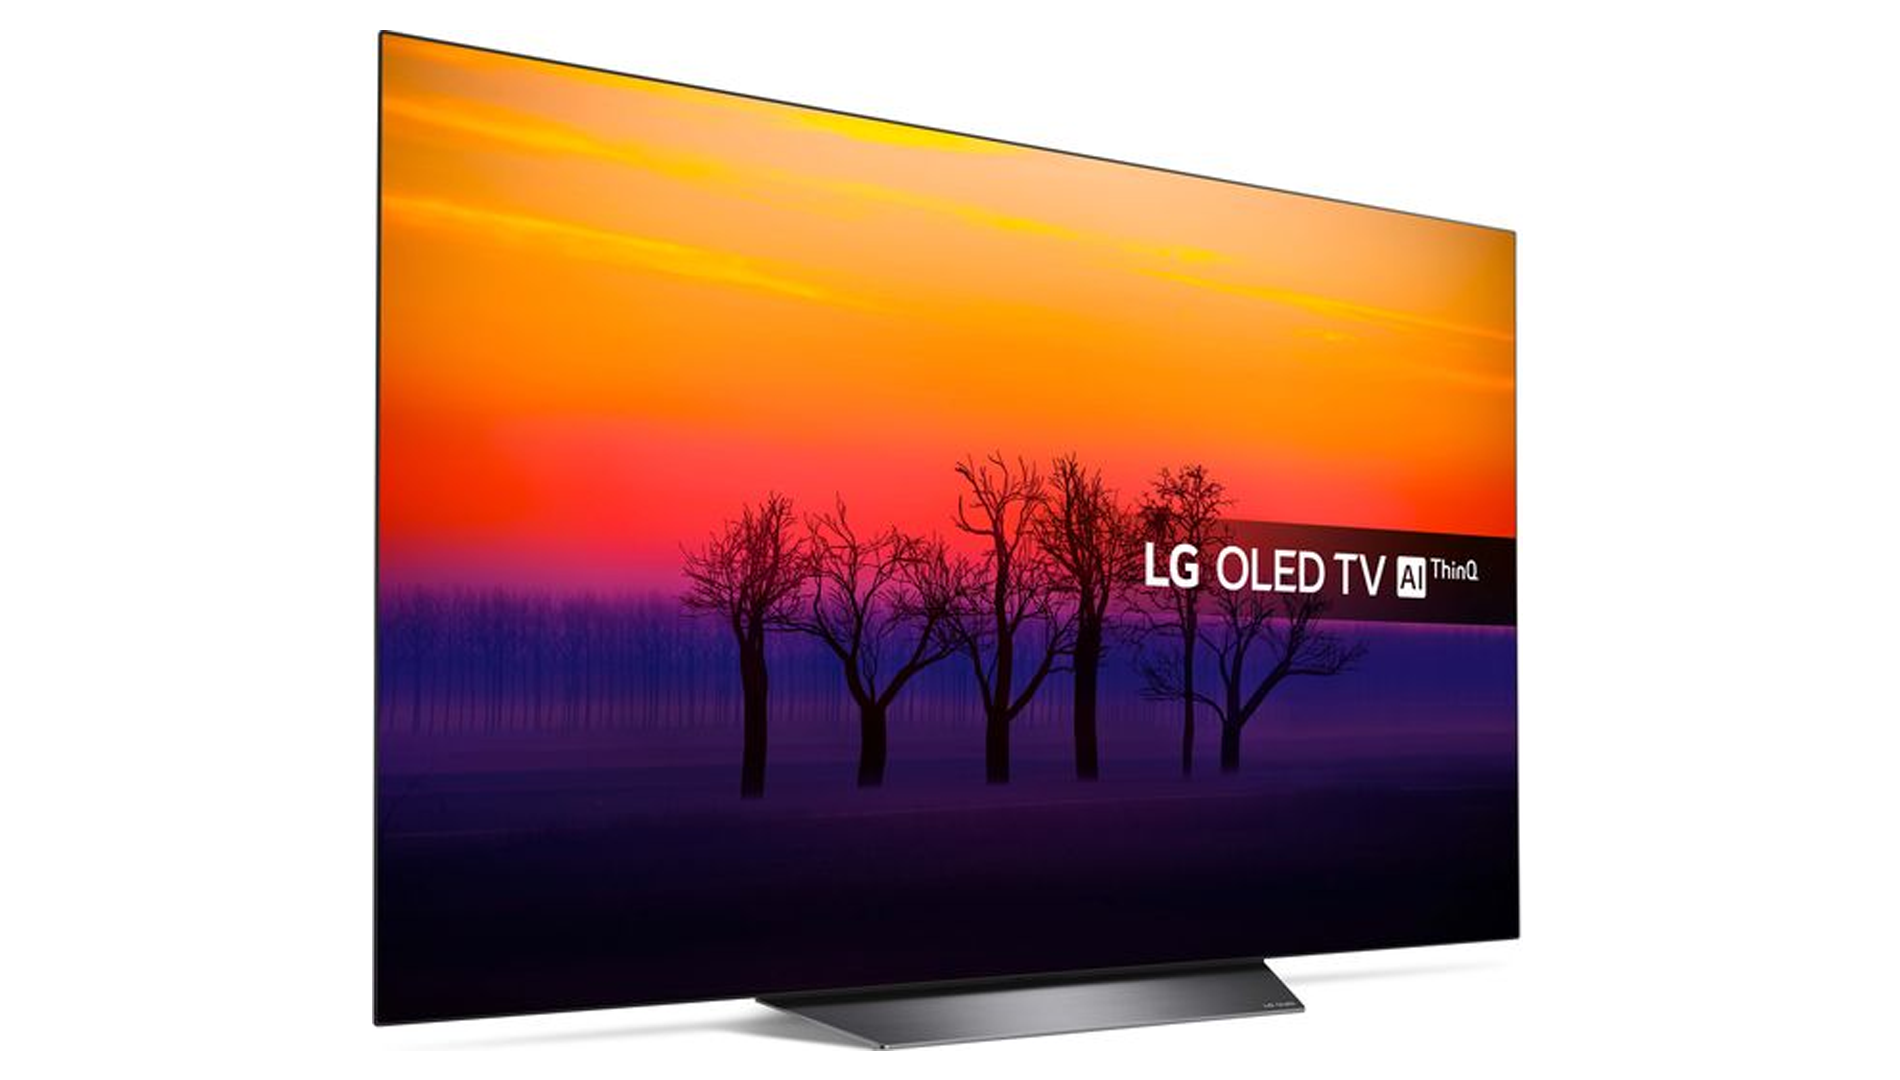 LG oled55b8pla. Телевизор Haier 55 OLED s9 Ultra. Телевизор LG OLED 2013. LG OLED 2012. Телевизор lg haier